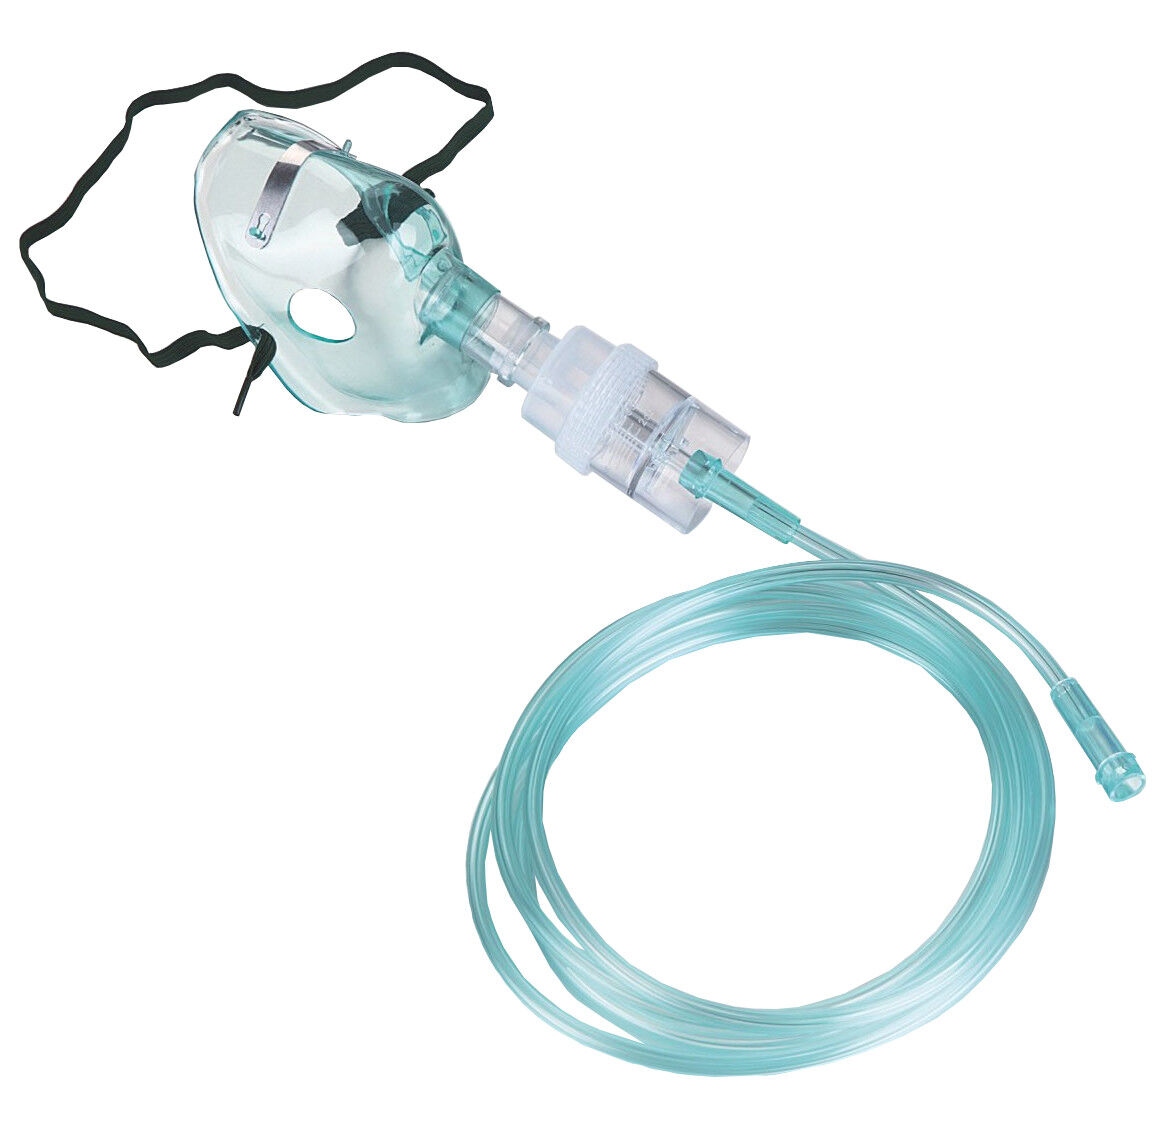 Vincal Set di accessori per aereosolterapia, composto da maschera, ampolla nebulizzatrice, tubo da mt 2 - Adulti/Bambini